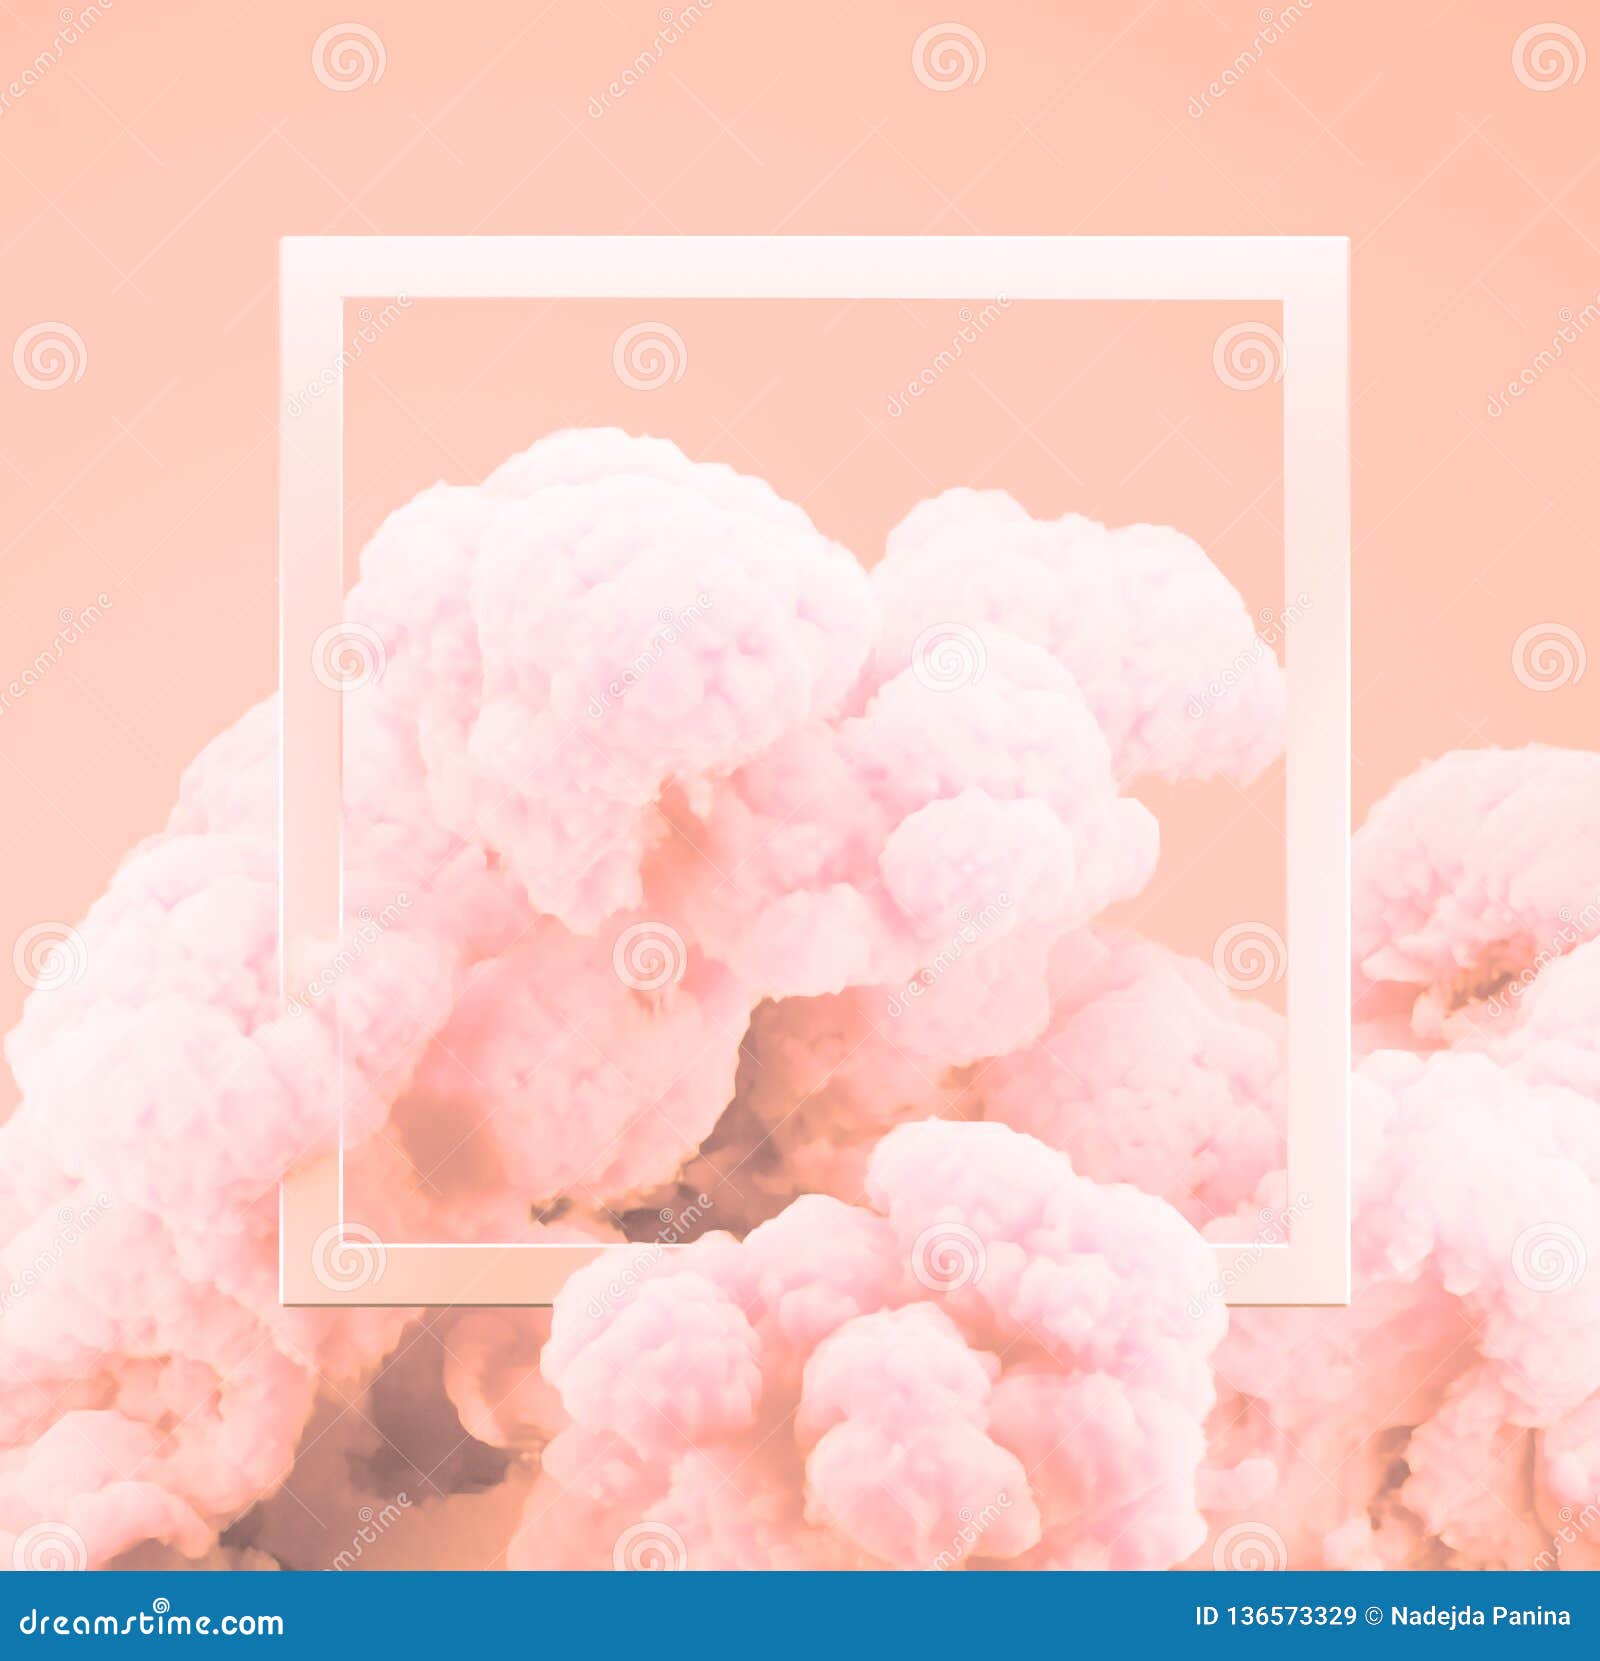 Sương mù hoa hồng trừu tượng với màu sắc sống động đang chờ đợi bạn khám phá. Hãy xem hình ảnh để cảm nhận được sự kì diệu của công nghệ làm sương mù và màu sắc tuyệt vời.